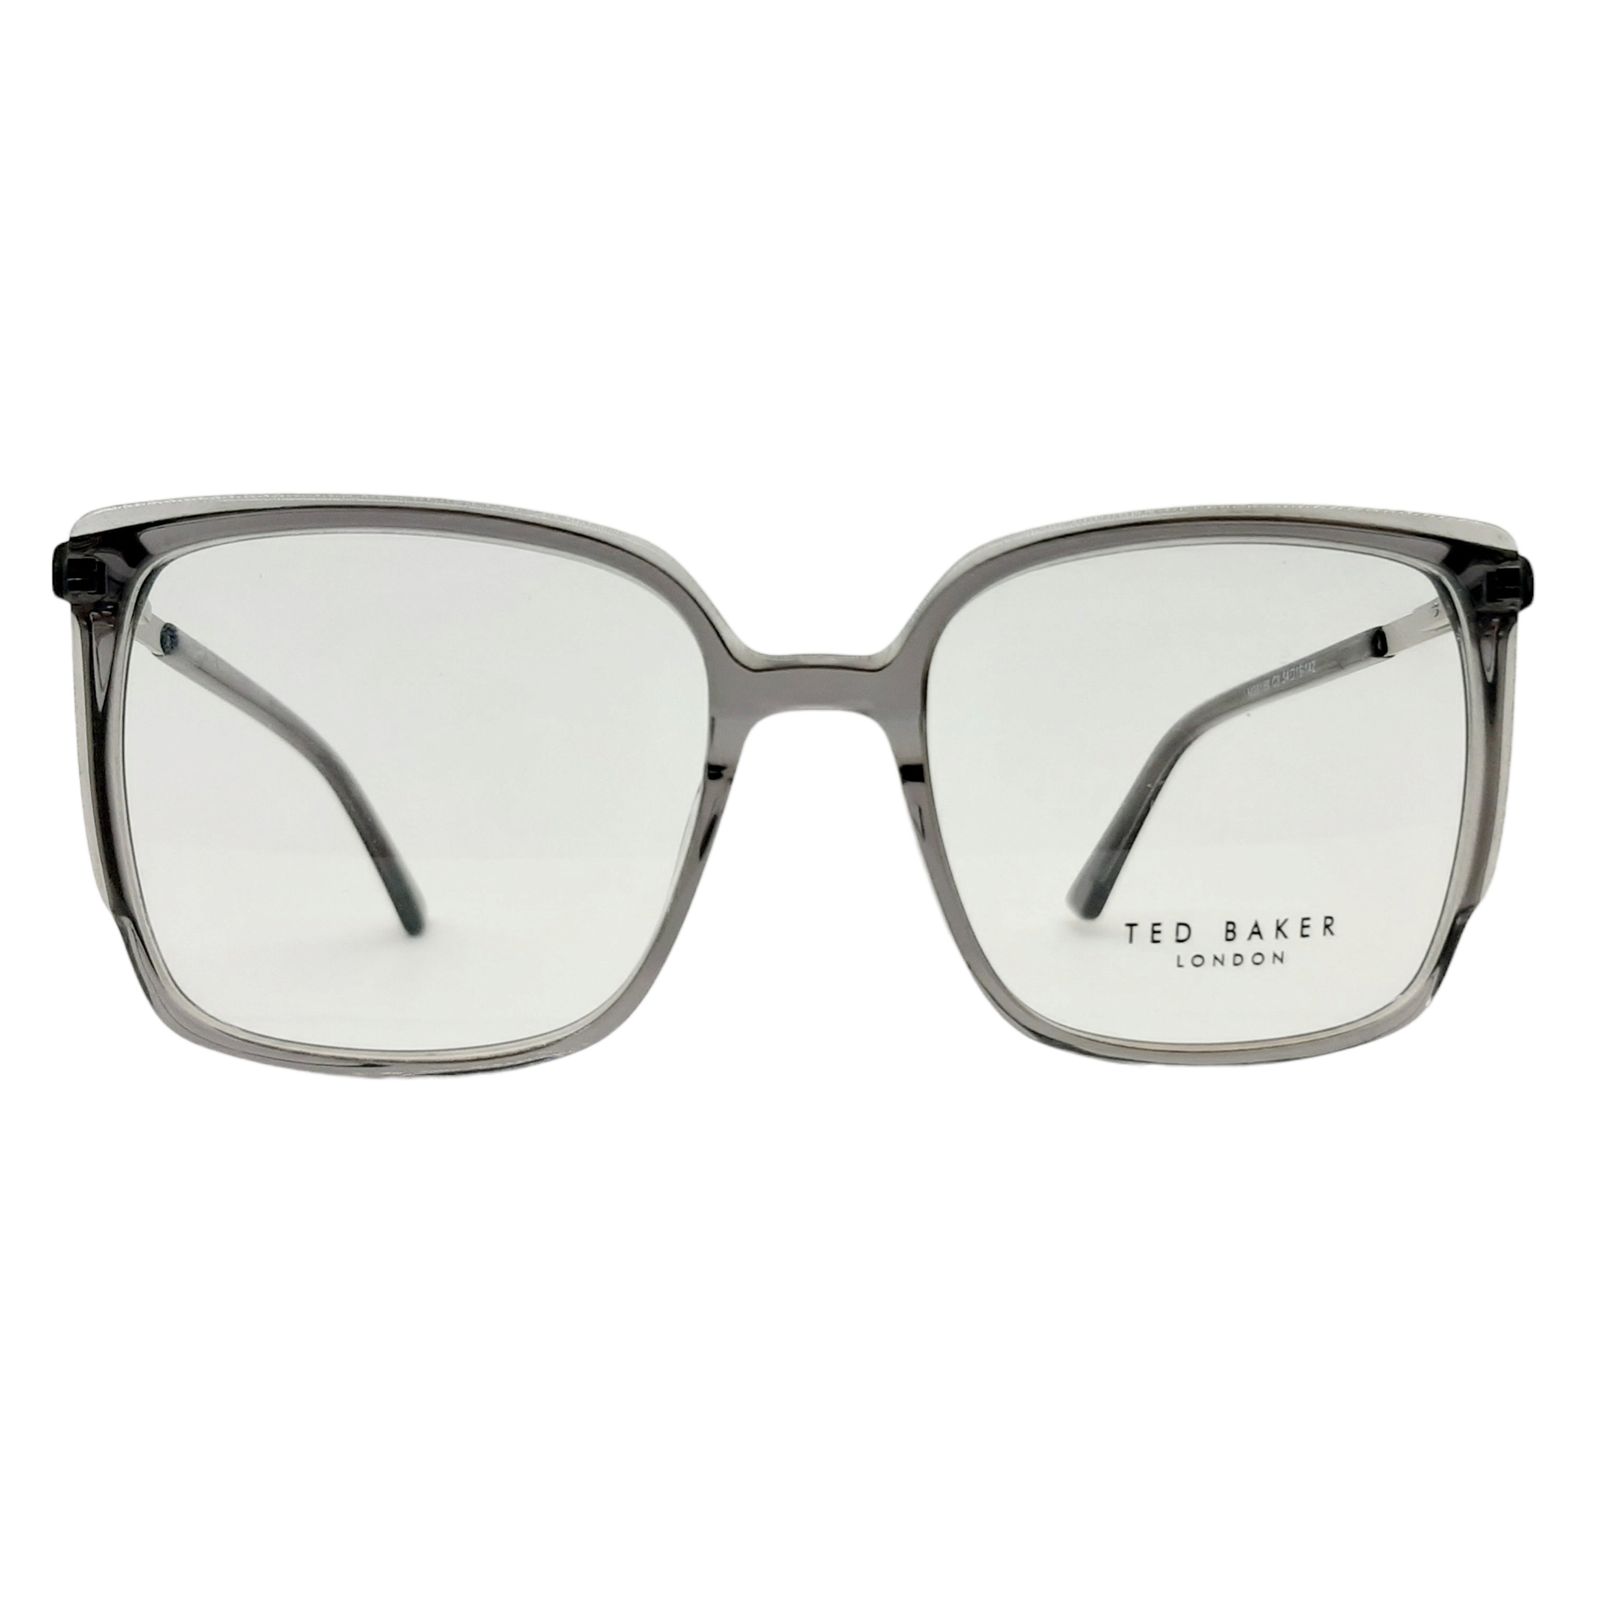 فریم عینک طبی تد بیکر مدل MG6169c3